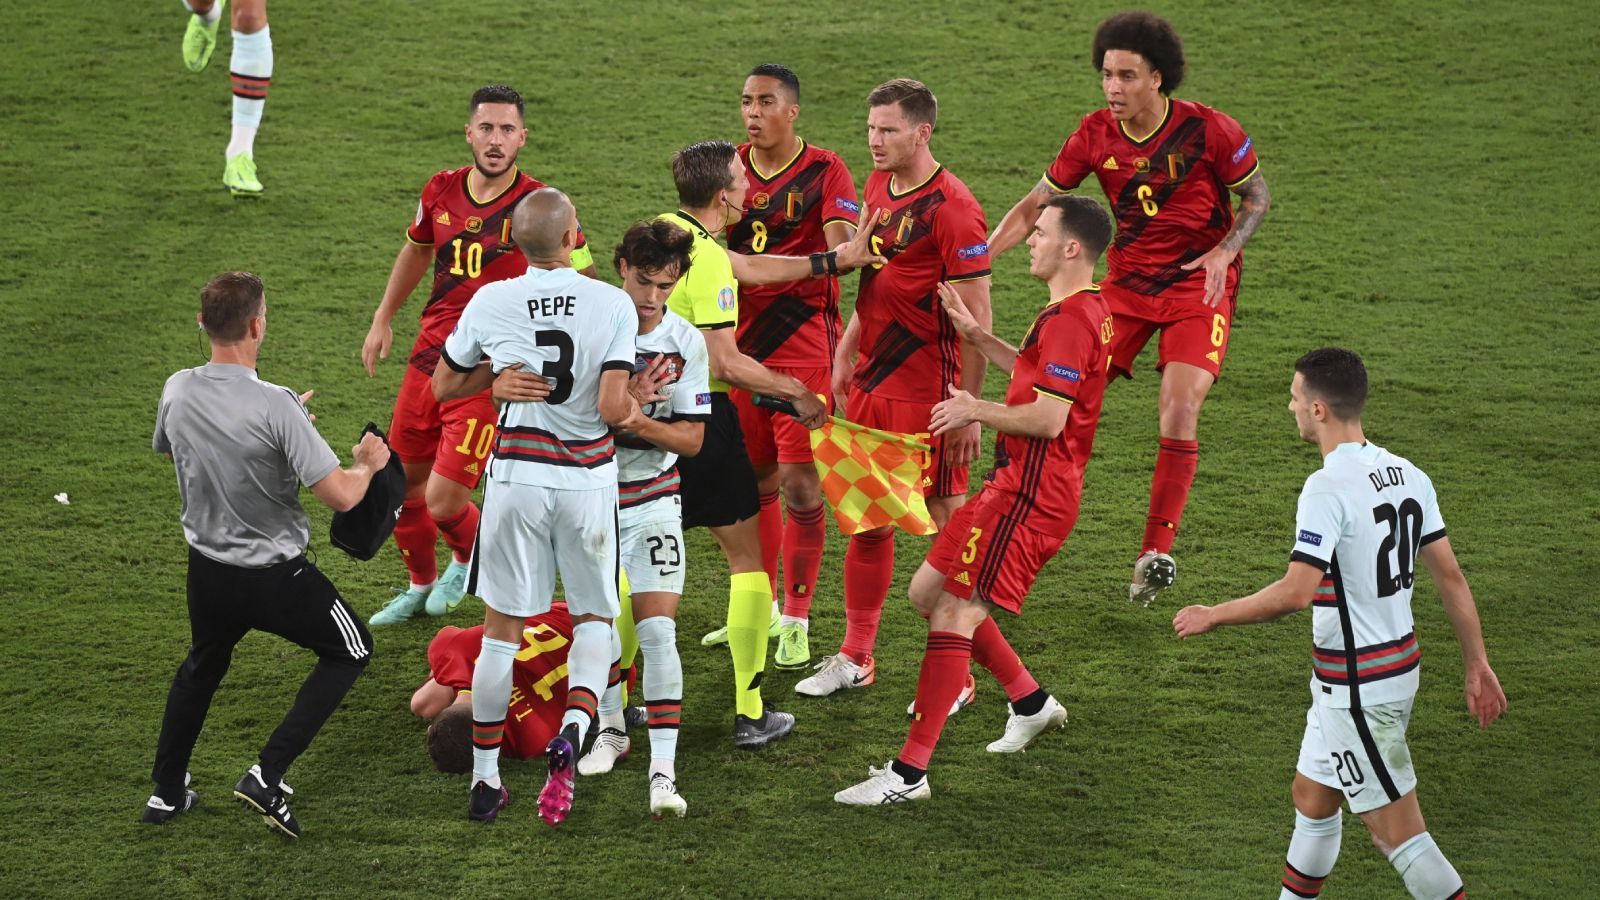 
                <strong>Belgien</strong><br>
                Belgien ist nach Italien und den Niederlanden das dritte Team, das mit drei Siegen durch die Gruppenphase marschierten. Doch so souverän der Weltranglisten-Erste dort war, im Achtelfinale zitterten sich die deutschen Nachbarn weiter. Beim 1:0 gegen Portugal erarbeitete sich Belgien kaum eine klare Torchance, in der Schlussphase scheiterte Portugal mehrfach an Thibaut Courtois, dem Pfosten und sich selbst. Da hat Belgien mächtig Glück gehabt.
              